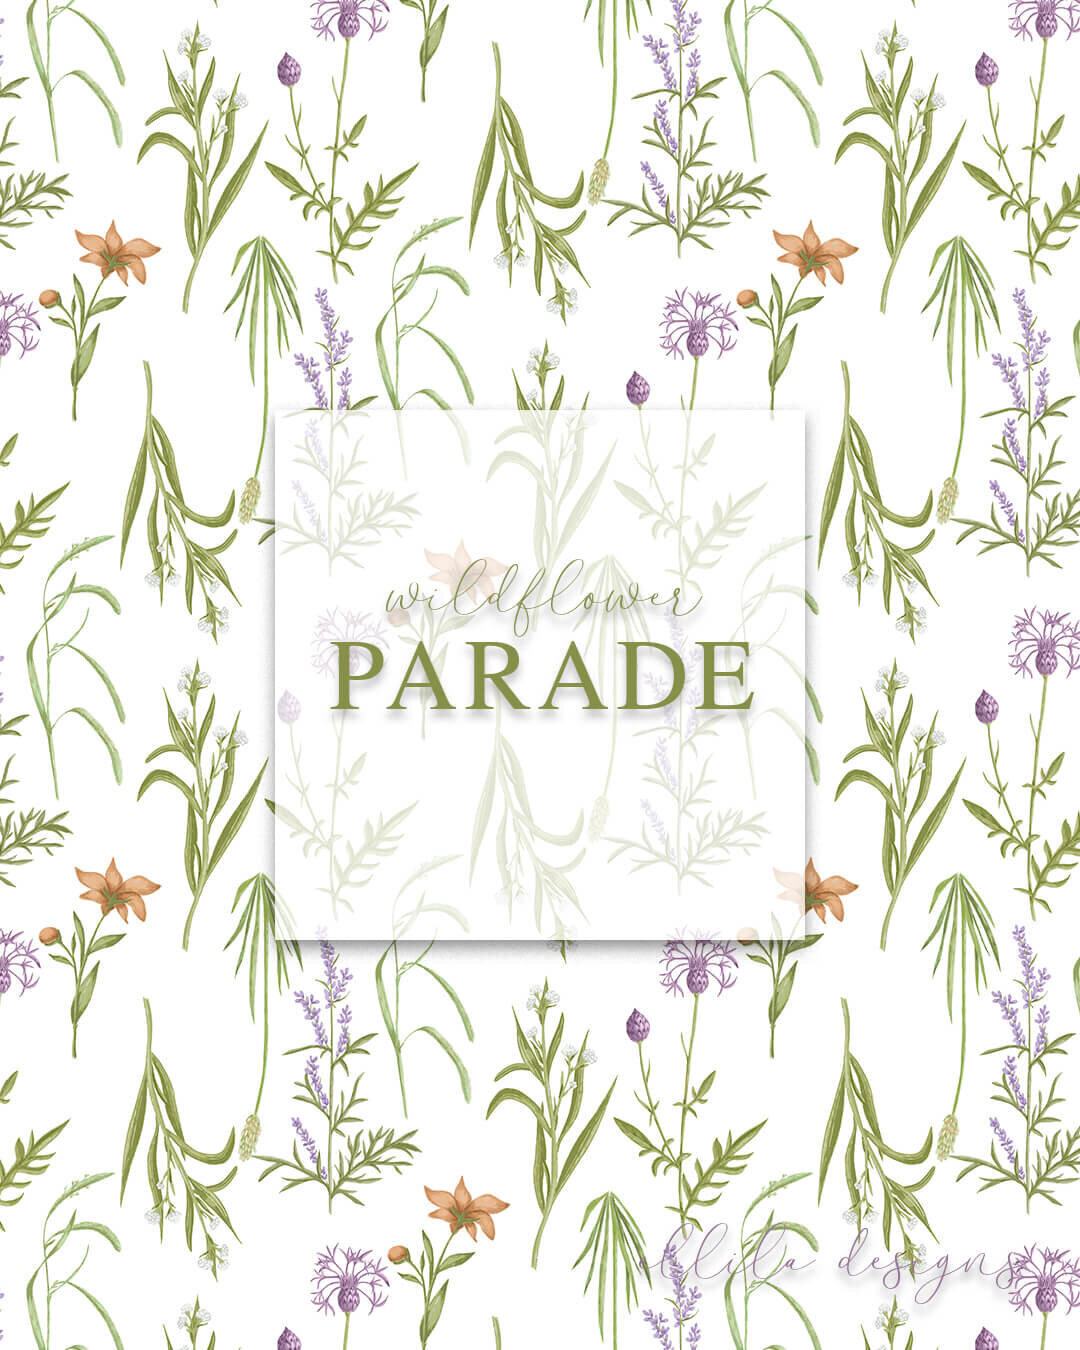 Wildflower parade